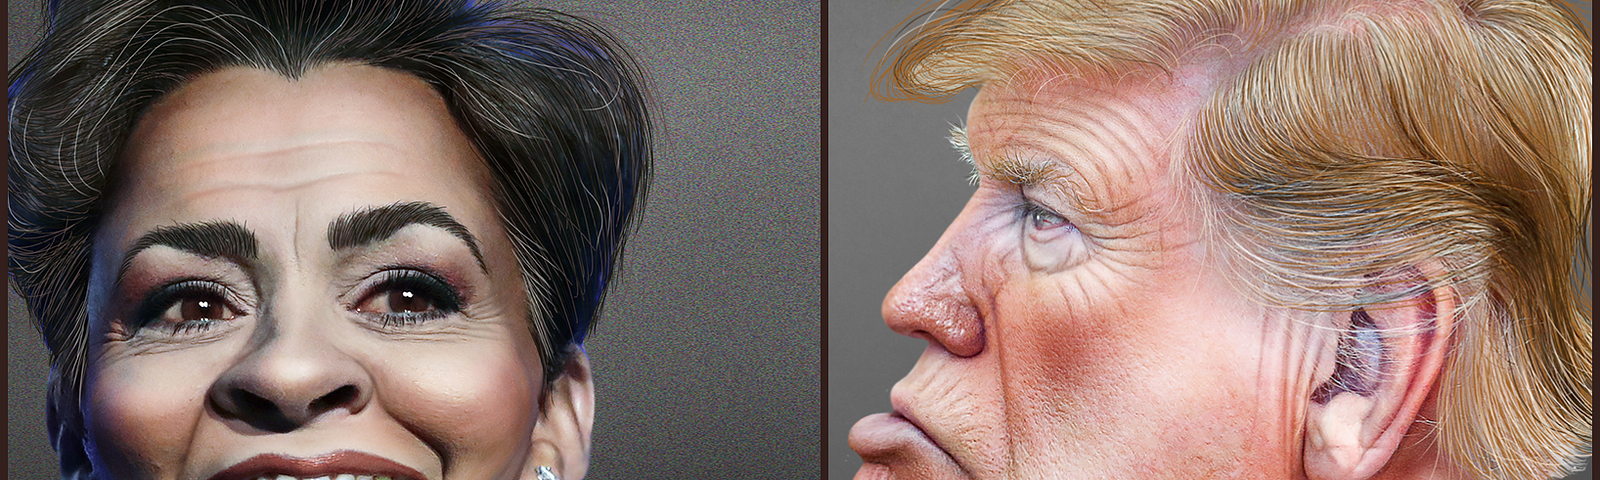 Caricatures of Kari Lake and Donald Trump